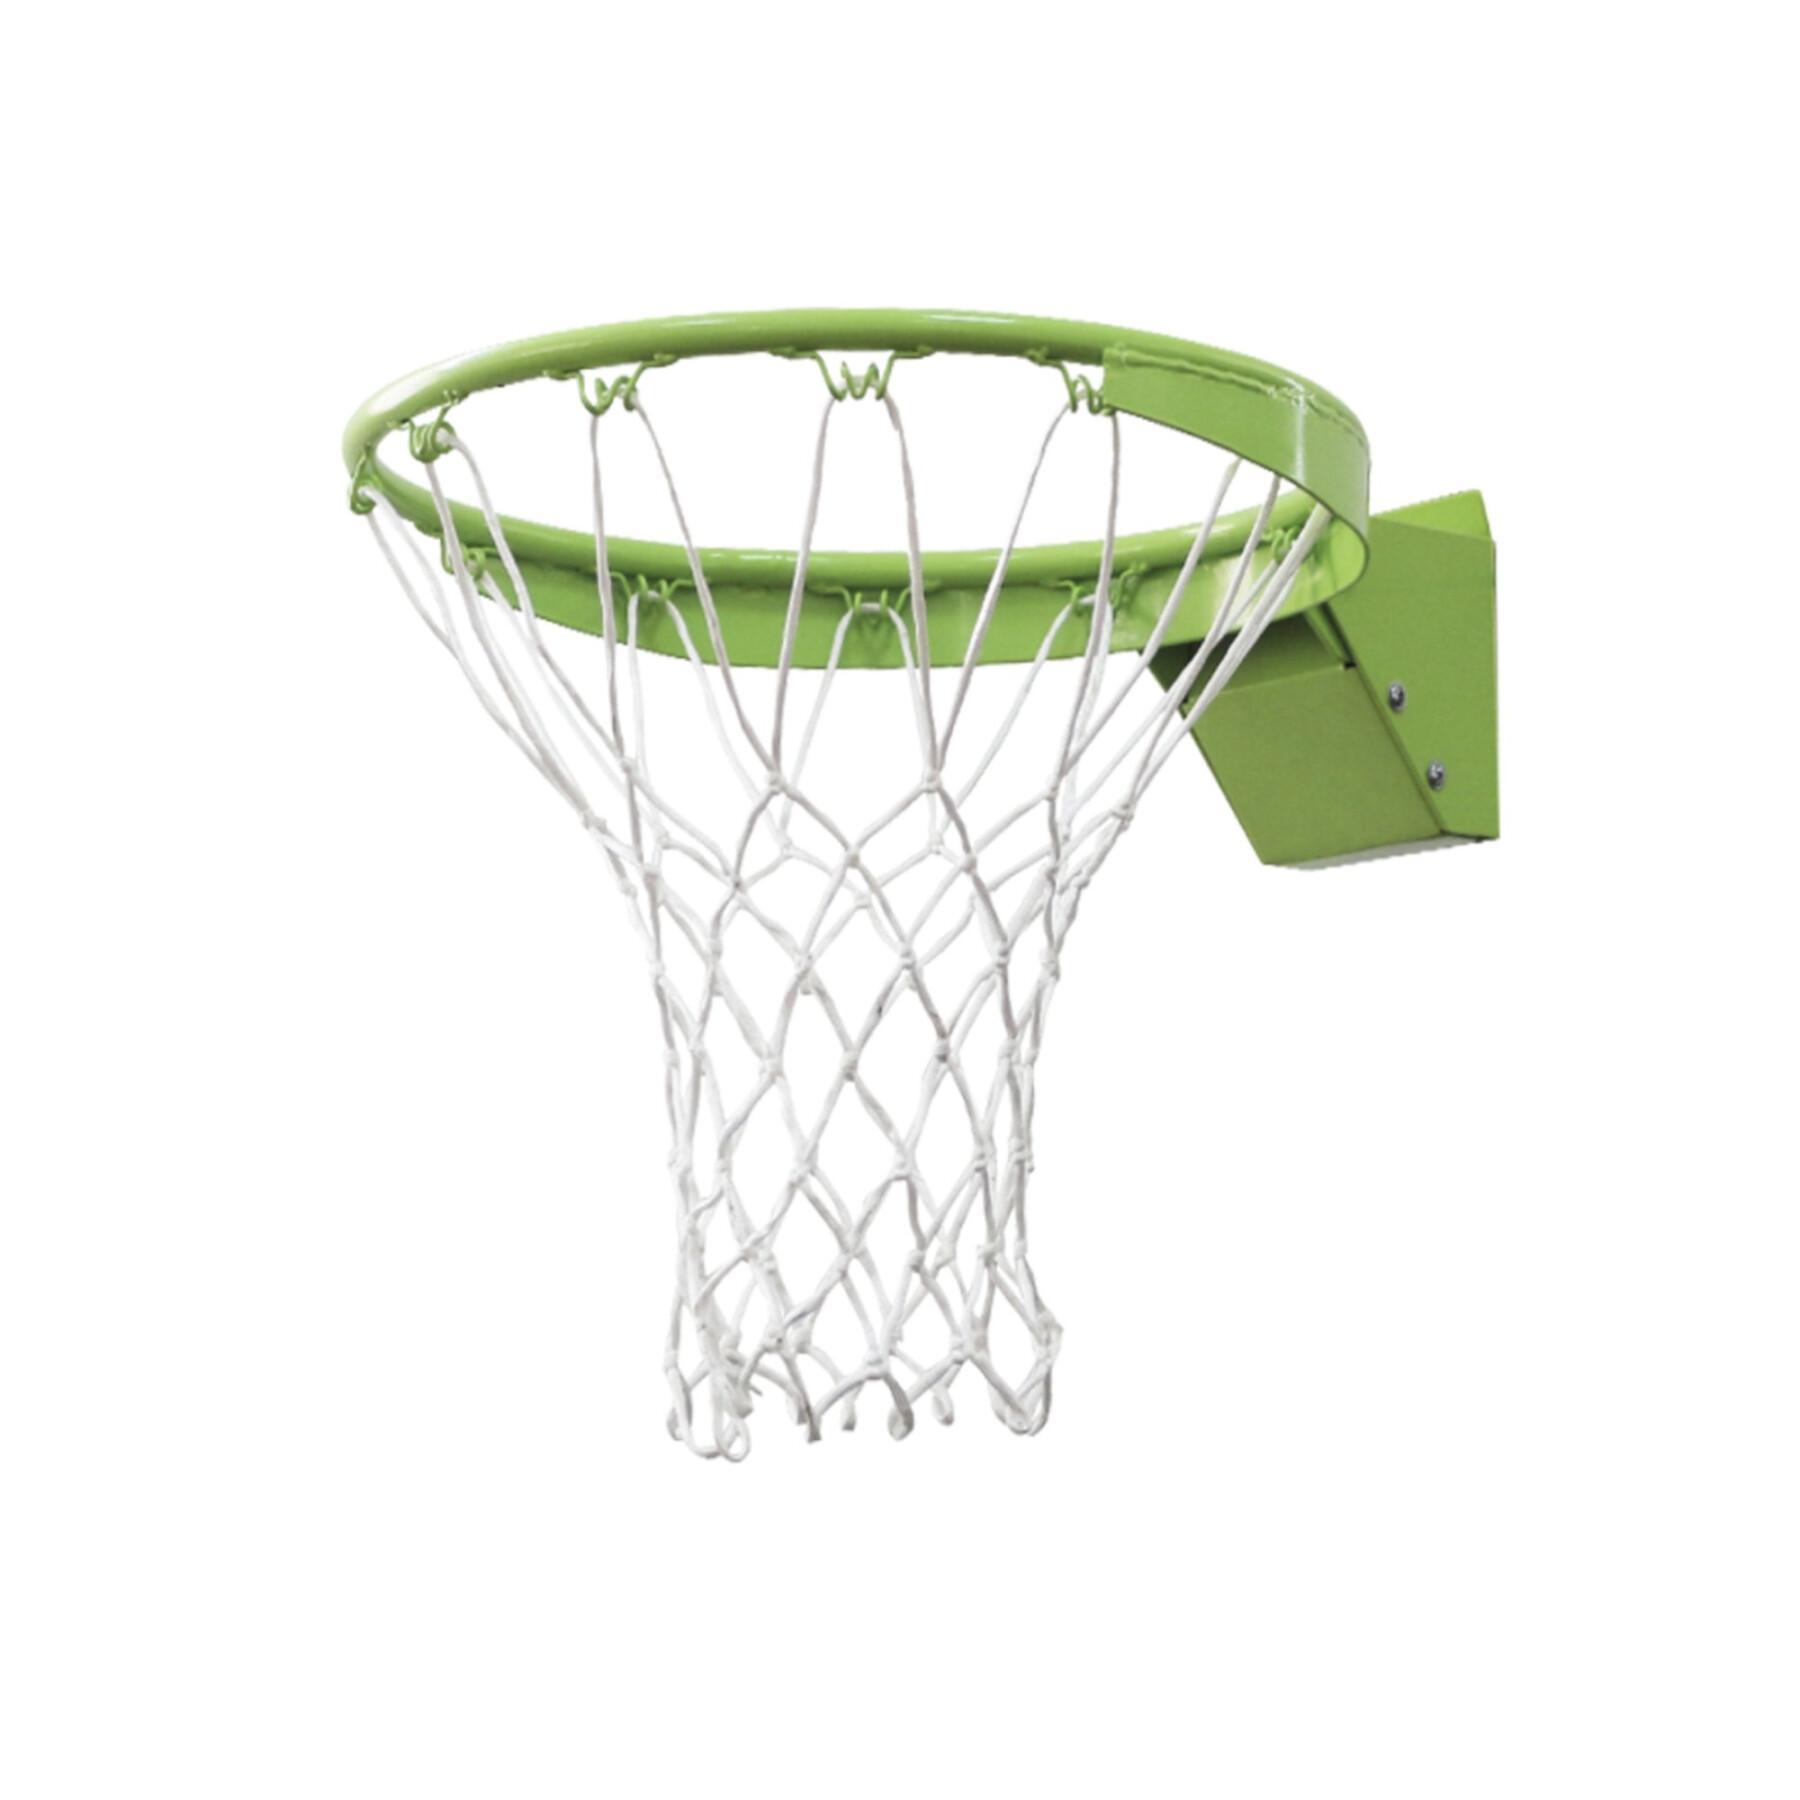 Dunkring för basket med nät Exit Toys